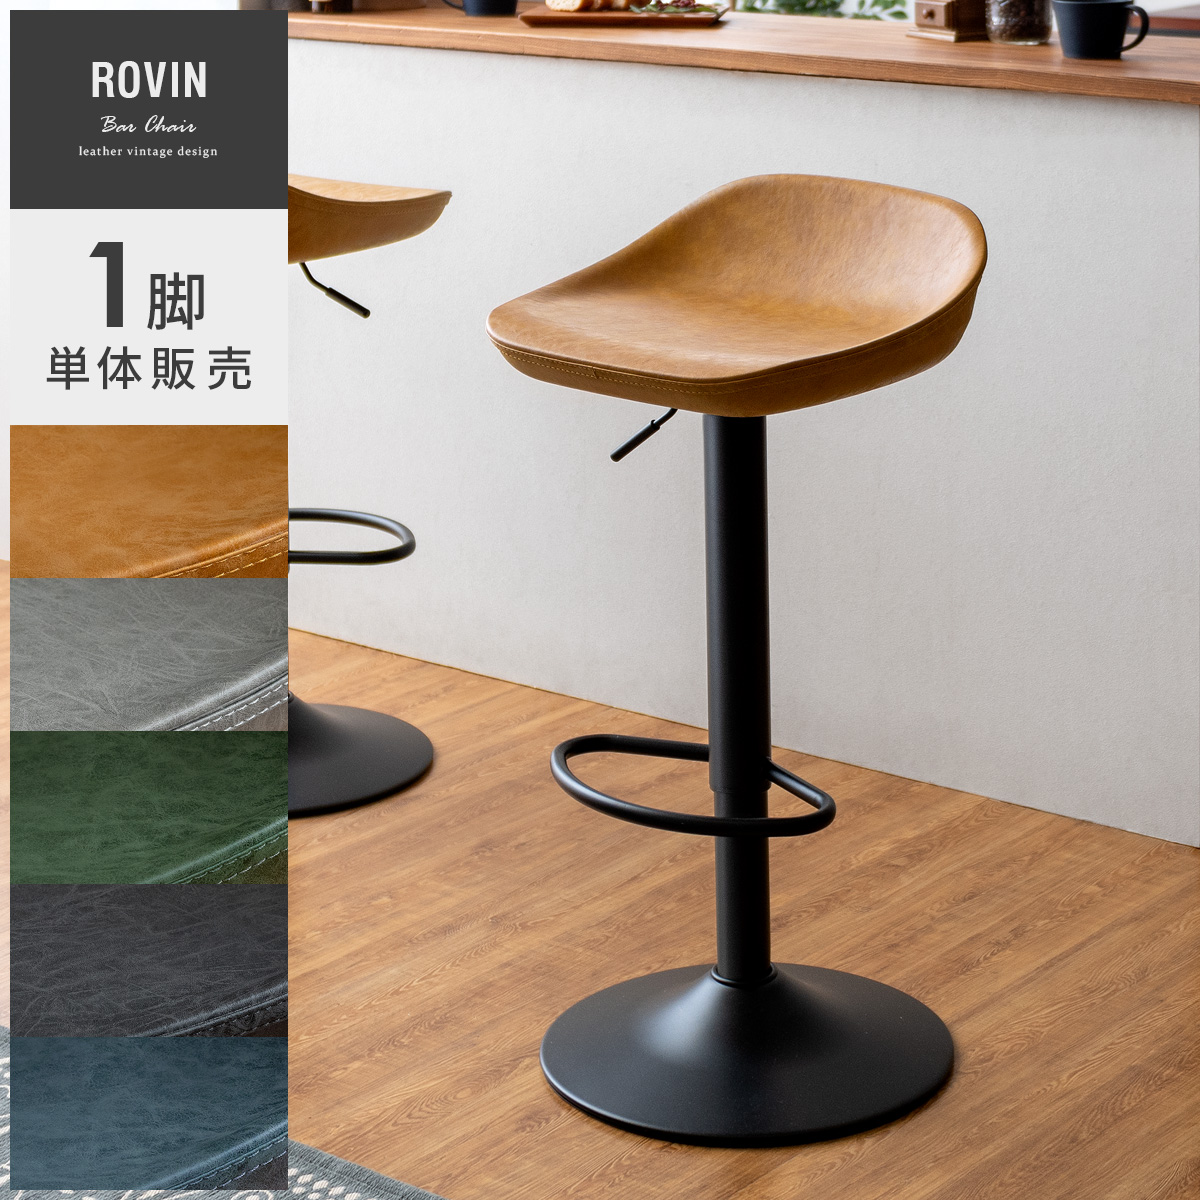 ヴィンテージデザインバーチェア ROVIN(ロビン) 1脚単体販売 【公式】 エア・リゾーム インテリア・家具通販